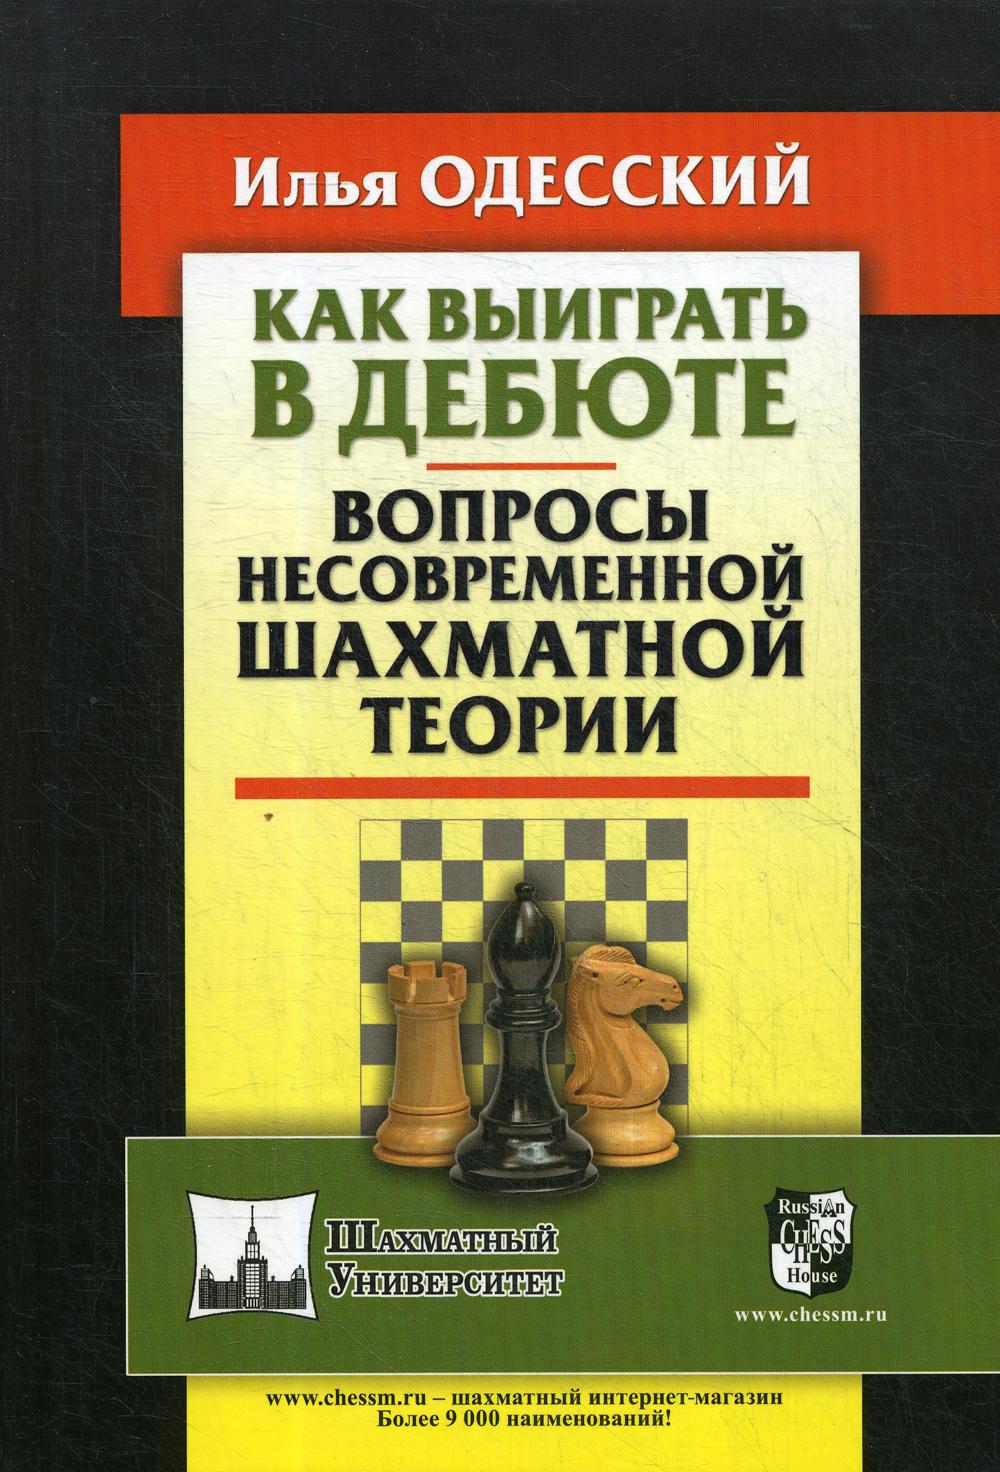 фото Книга как выиграть в дебюте russian chess house